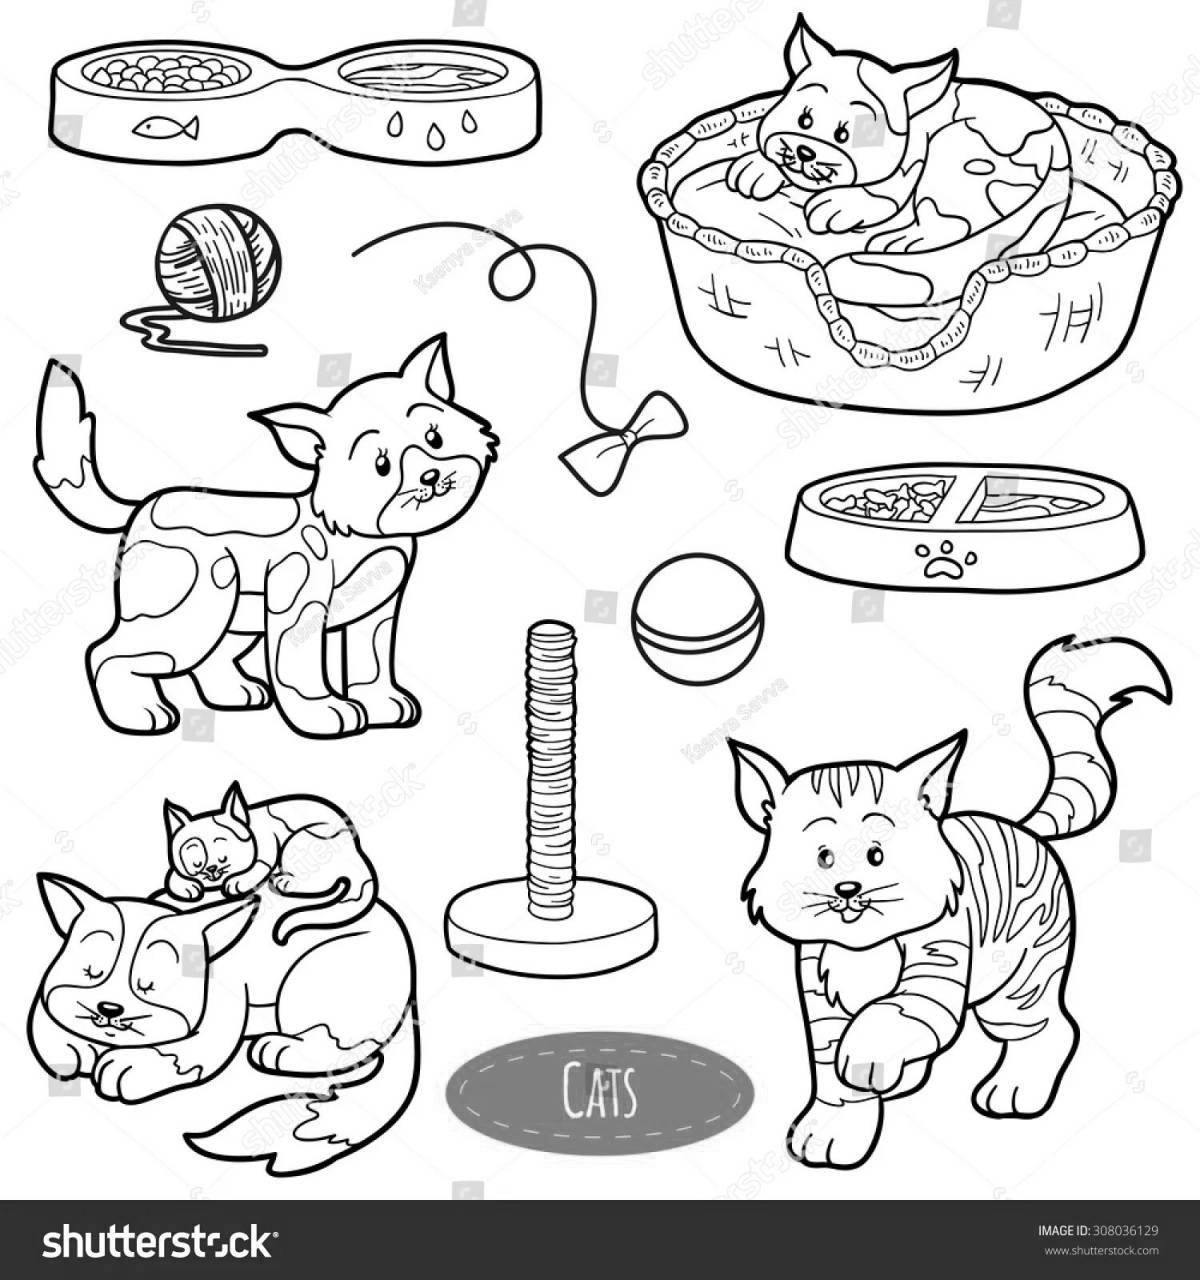 Incredible cat food coloring book